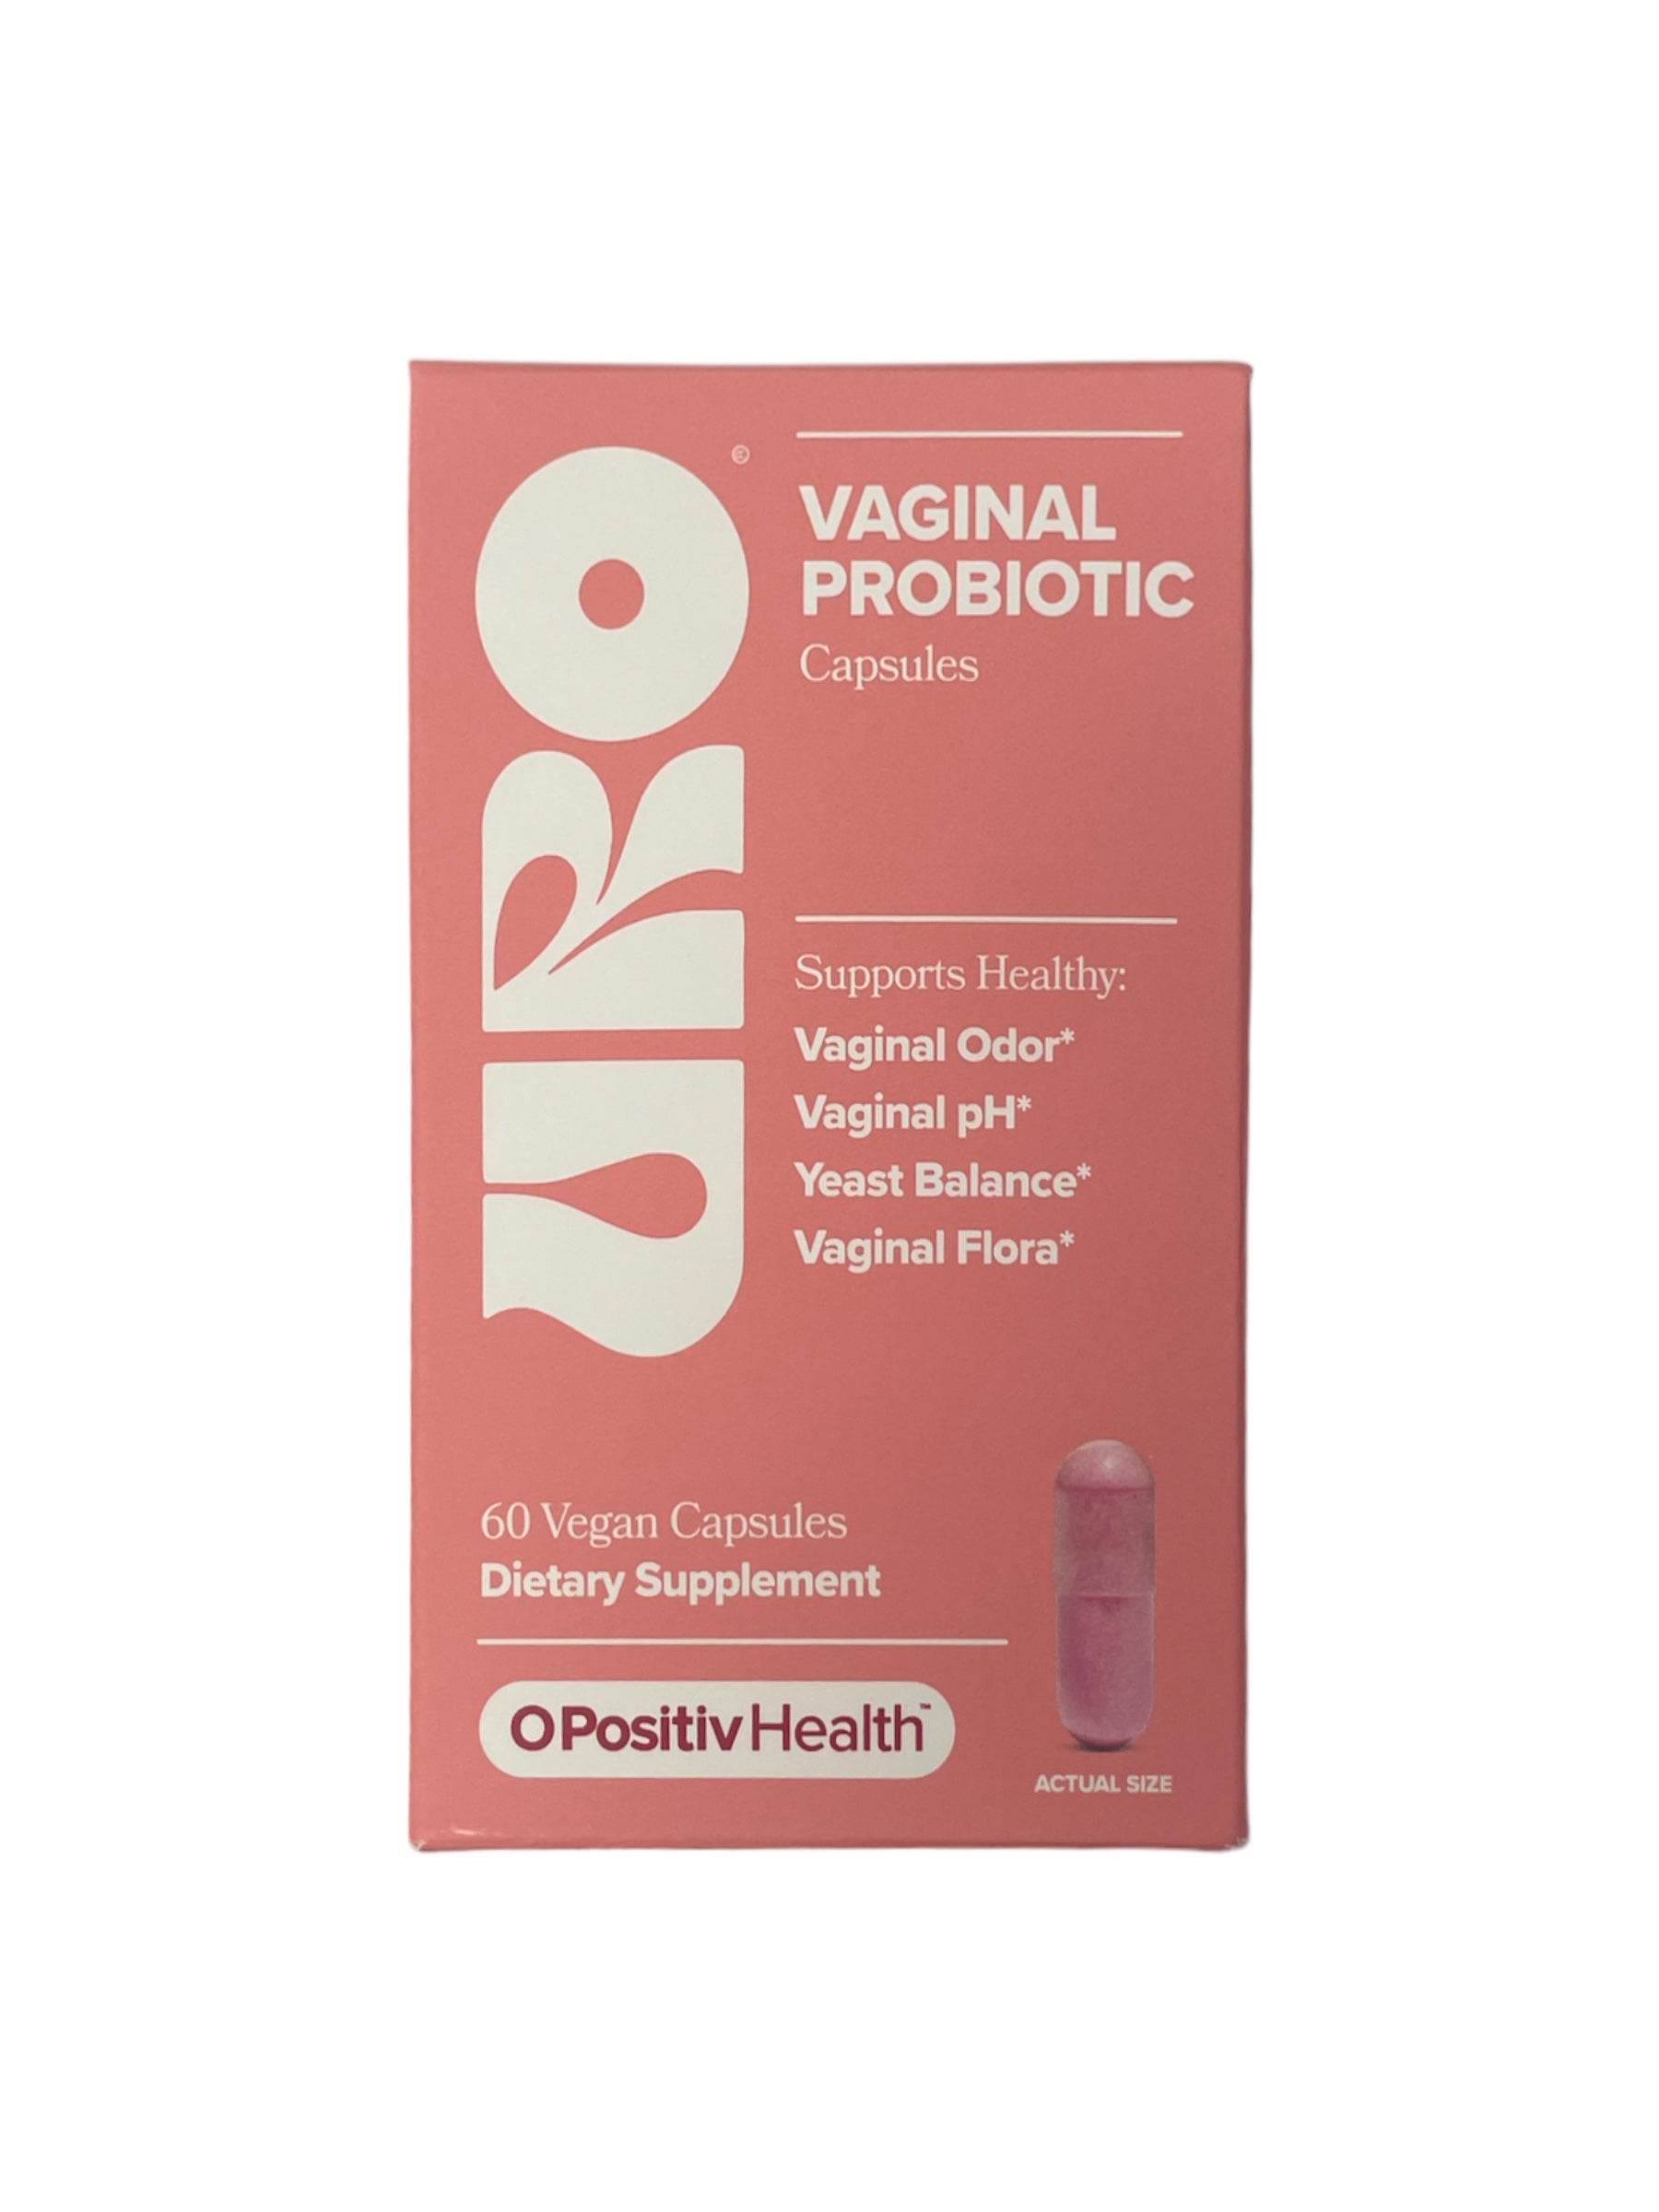 URO Vaginal Probiotic Capsules, 60 Count